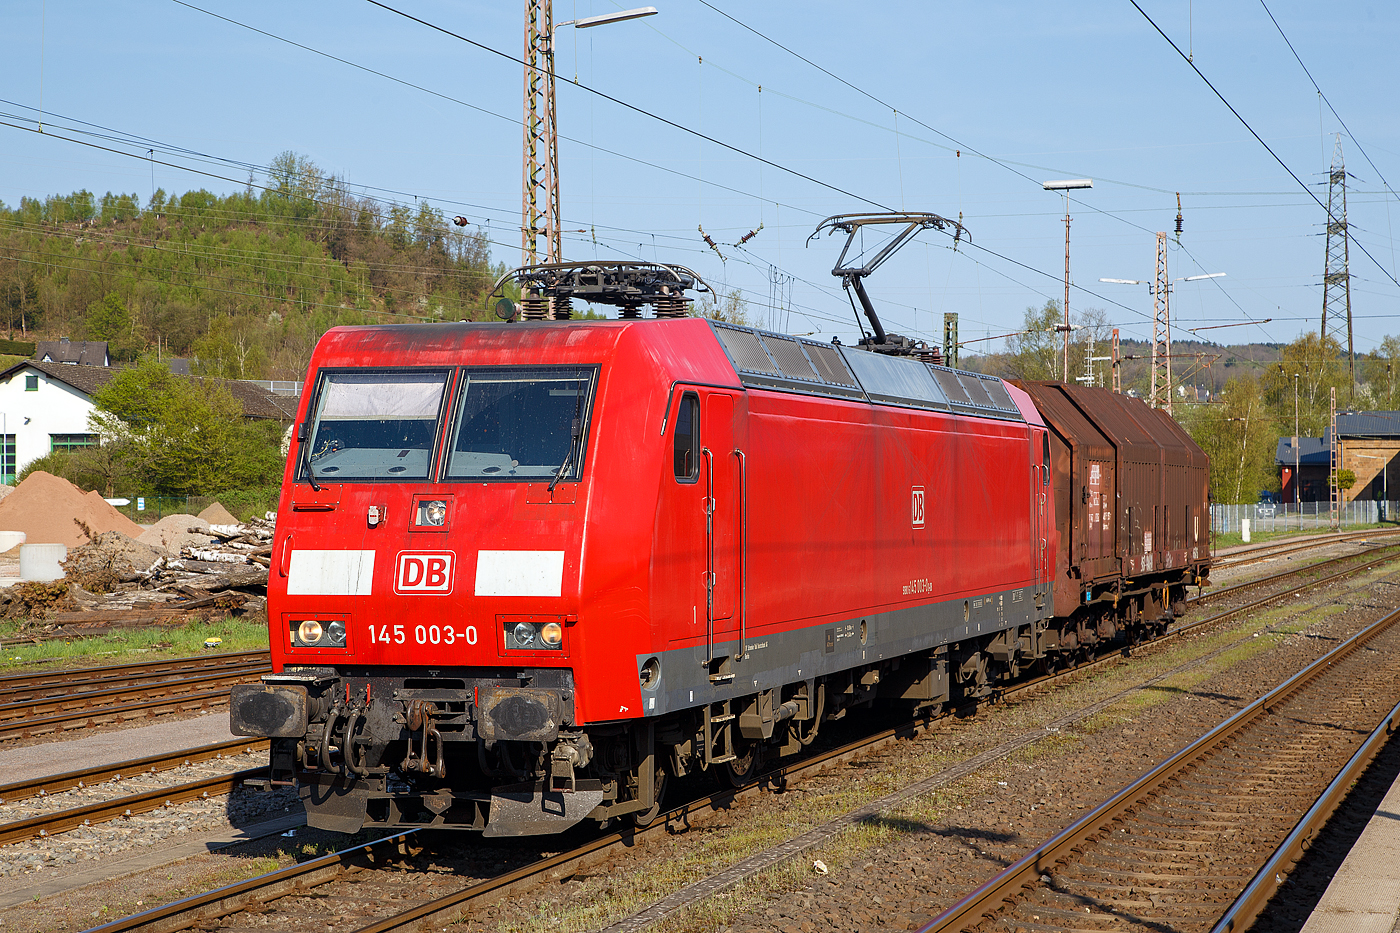 Die 145 003-0 (91 80 6145 003-0 D-DB) der DB Cargo Deutschland AG am 20.04.2018 mit einem kurzem Güterzug (einem sechsachsigen Drehgestellflachwagen für Coiltransporte mit verschiebbaren Teleskophauben und Lademulden für Coiltransporte der Gattung Sahimms-u 900) in Kreuztal.

Die TRAXX F140 AC wurde 1997 von ADtranz (ABB Daimler-Benz Transportation GmbH) in Hennigsdorf unter der Fabriknummer 22297 gebaut. Seit September 2018 ist sie nun an die DB-Tochter RBH Logistics GmbH (Gladbeck) vermietet und trägt dort die Bezeichnung RBH 207.